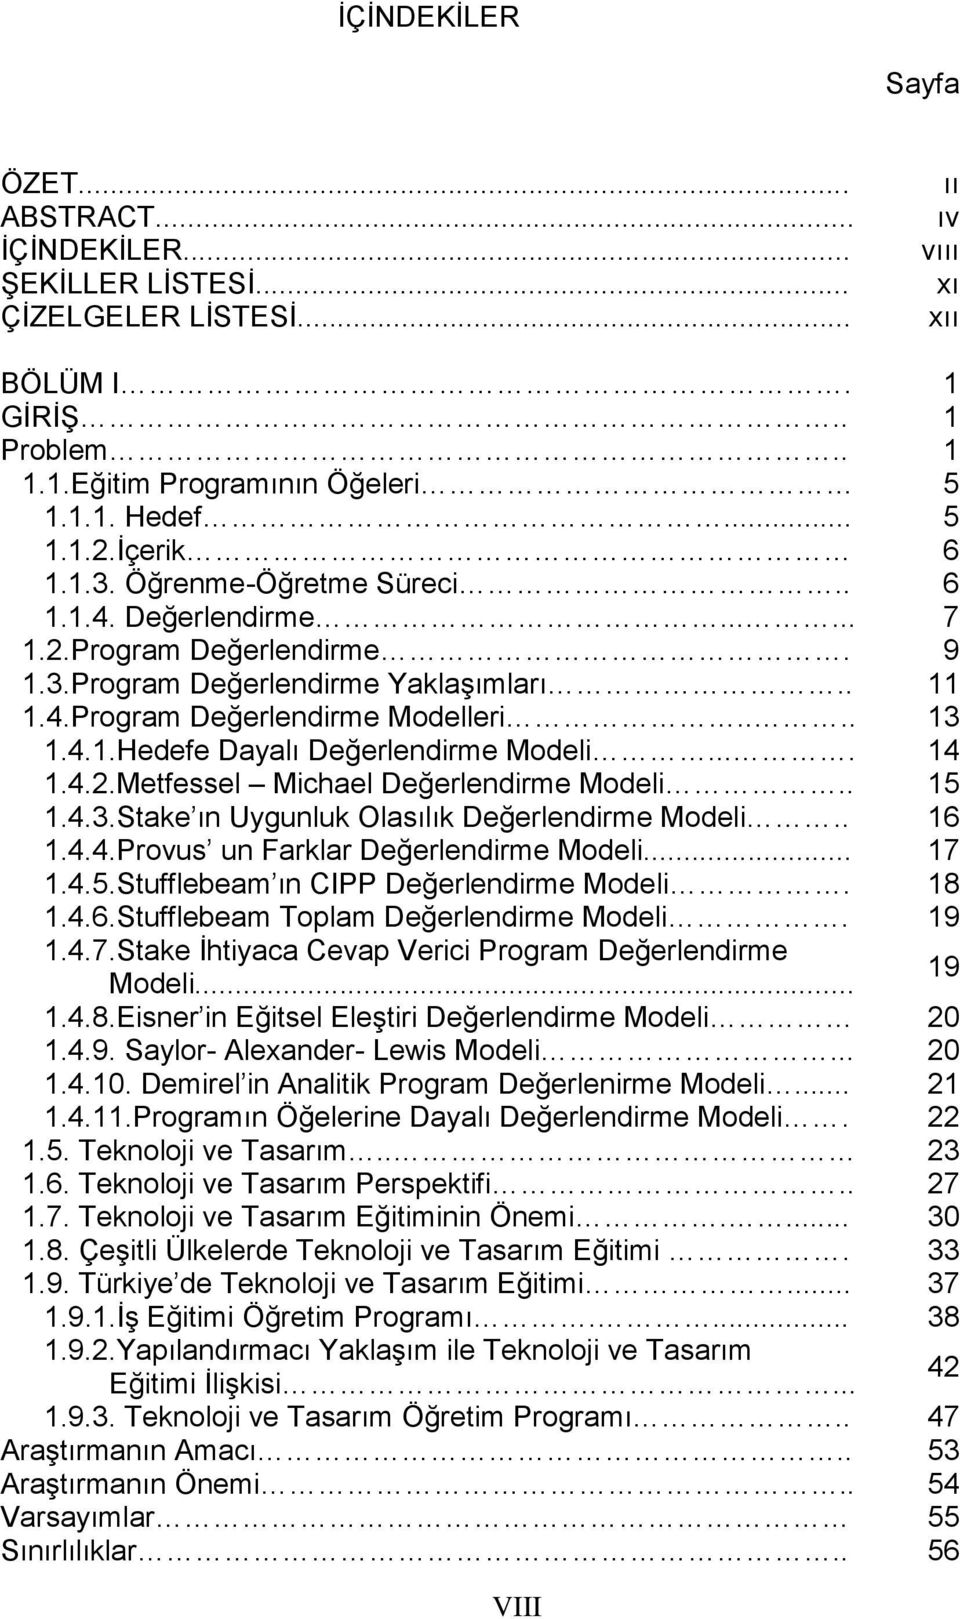 ... 14 1.4.2.Metfessel Michael Değerlendirme Modeli.. 15 1.4.3.Stake ın Uygunluk Olasılık Değerlendirme Modeli.. 16 1.4.4.Provus un Farklar Değerlendirme Modeli... 17 1.4.5.Stufflebeam ın CIPP Değerlendirme Modeli.